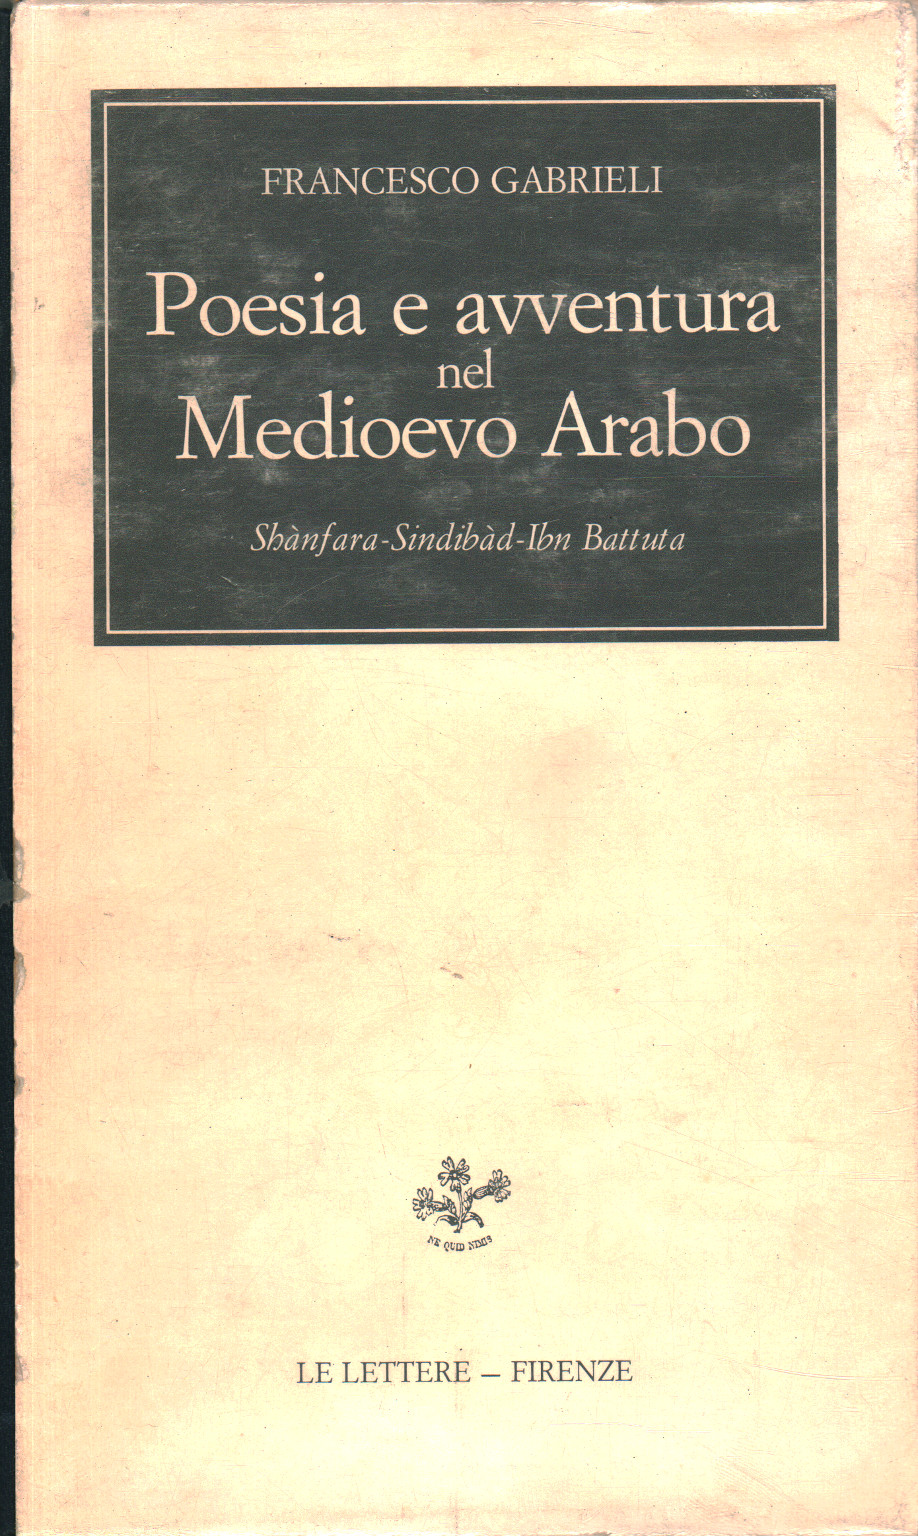 Poesie und Abenteuer im arabischen Mittelalter, Francesco Gabrieli